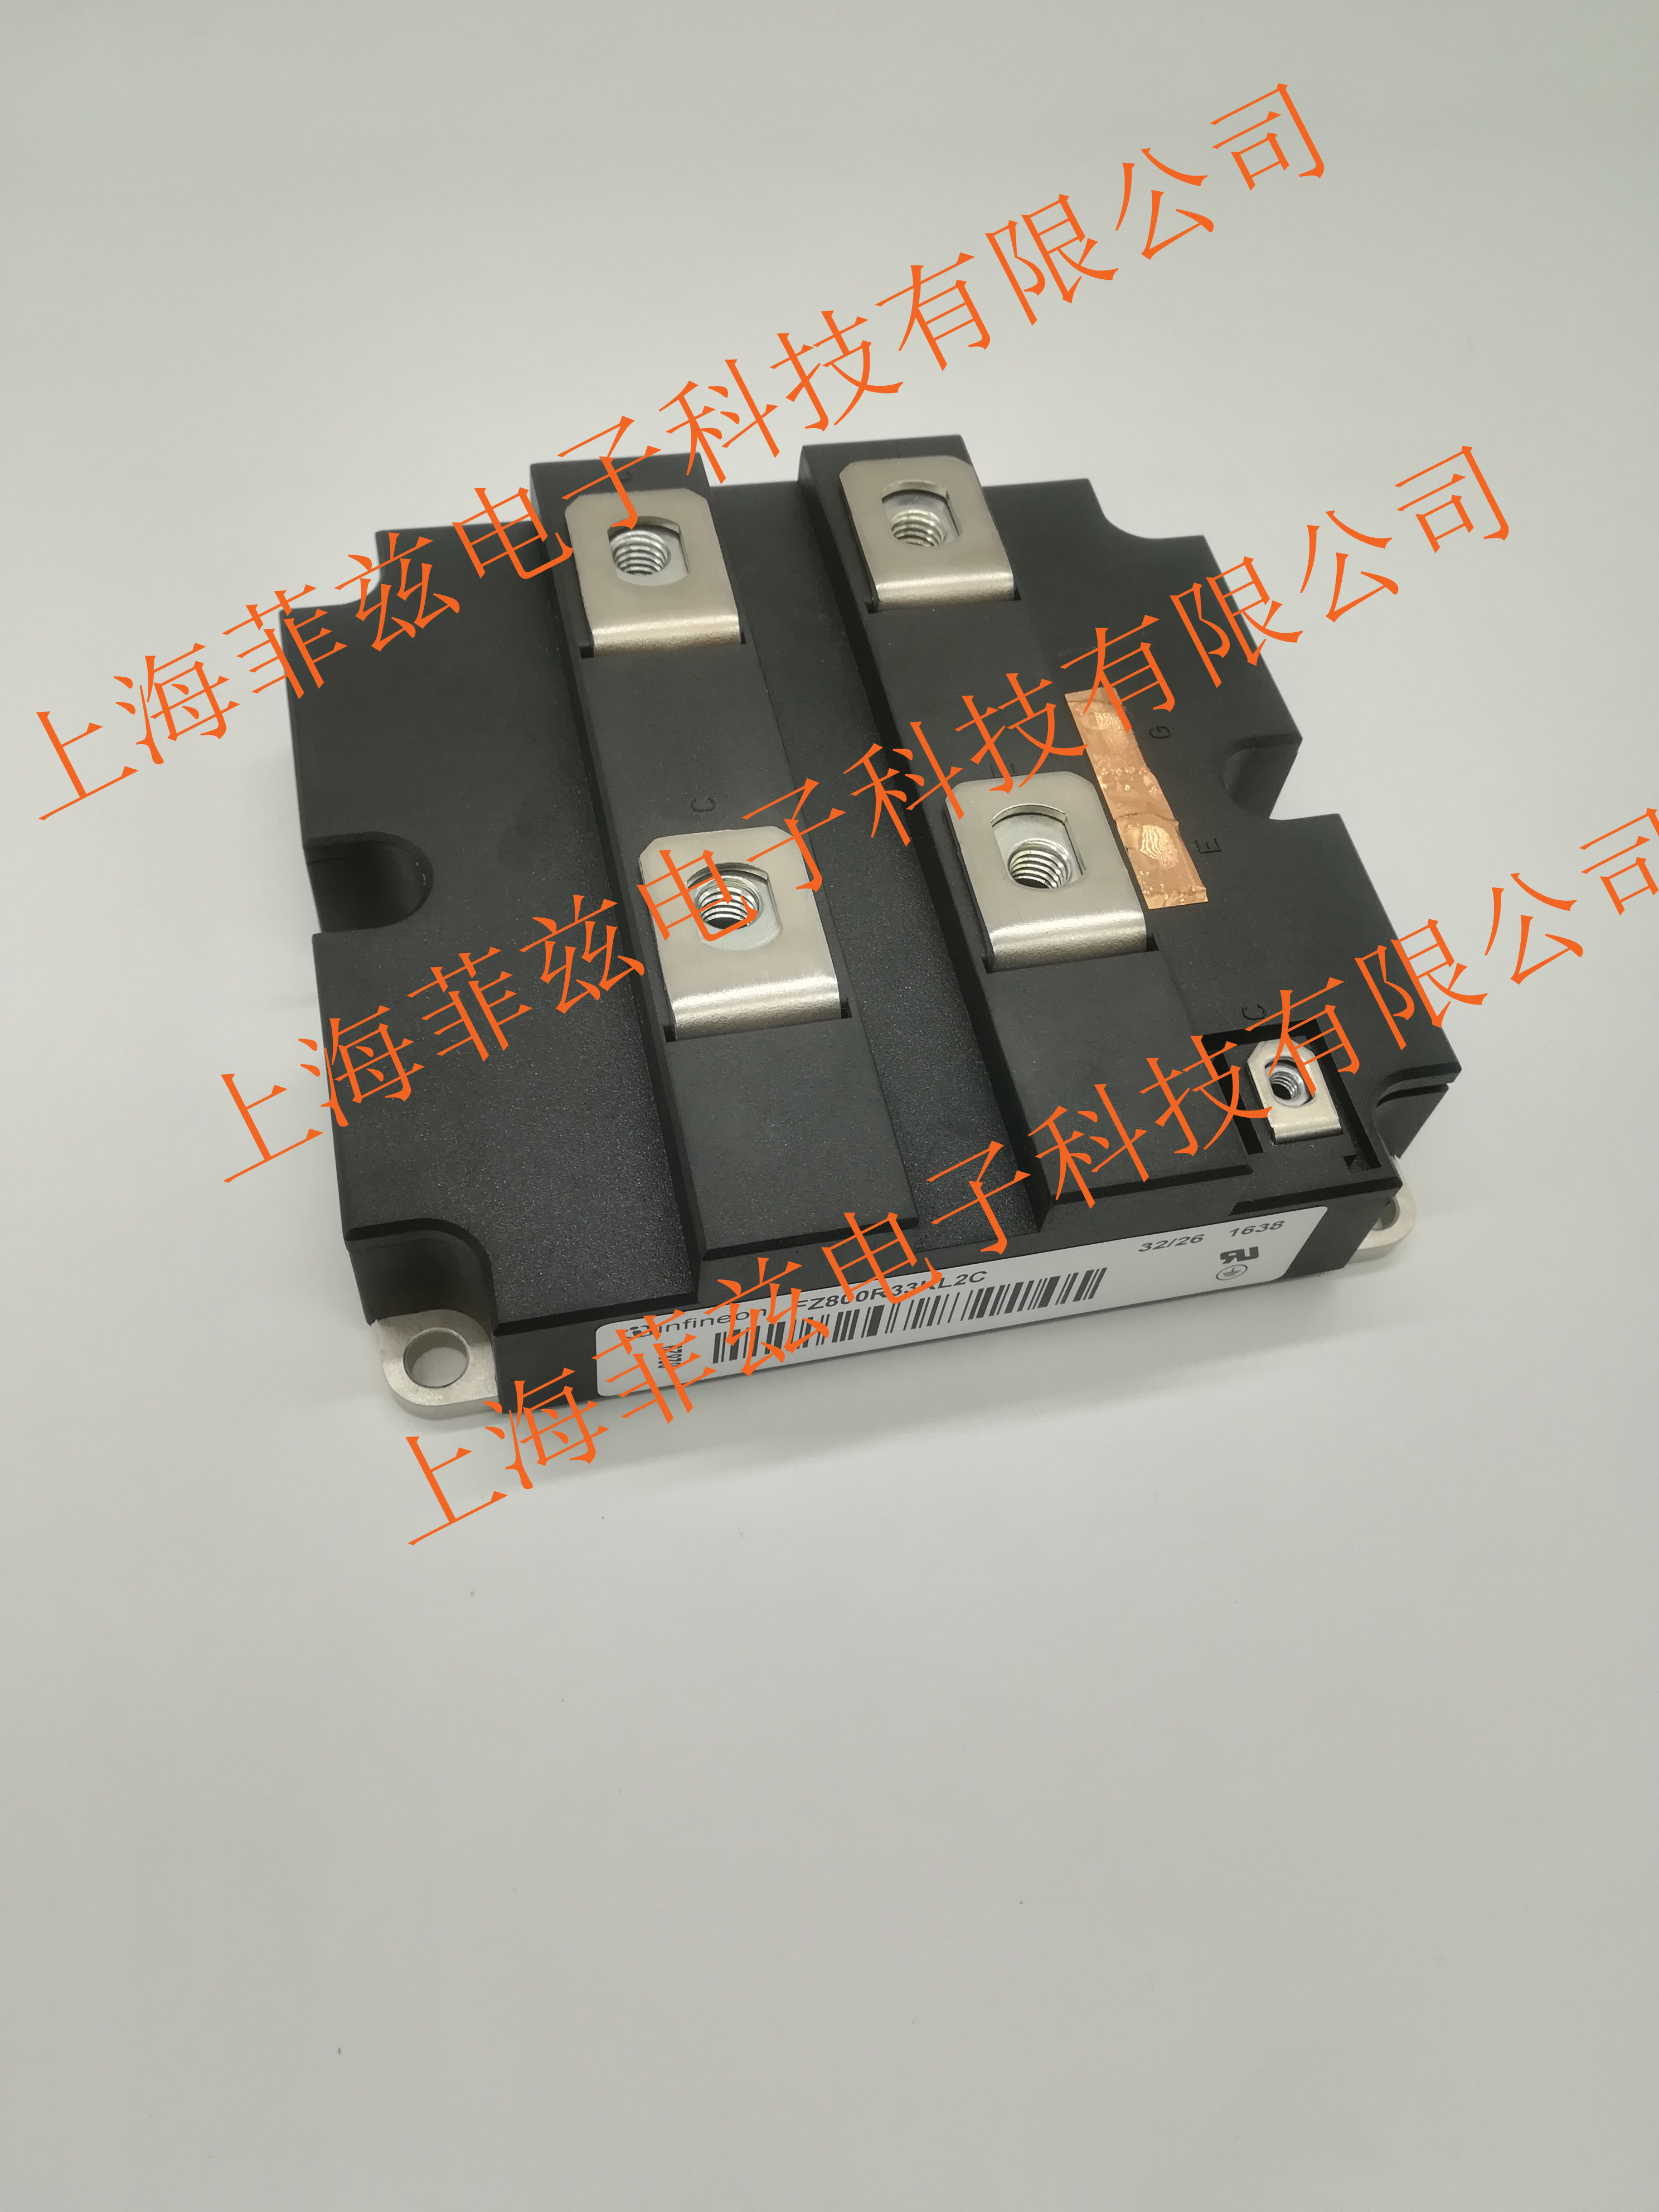 上海上海IGBT模块价格厂家批发，报价，优质供应商上海菲兹更专业，欢迎用户来电咨询